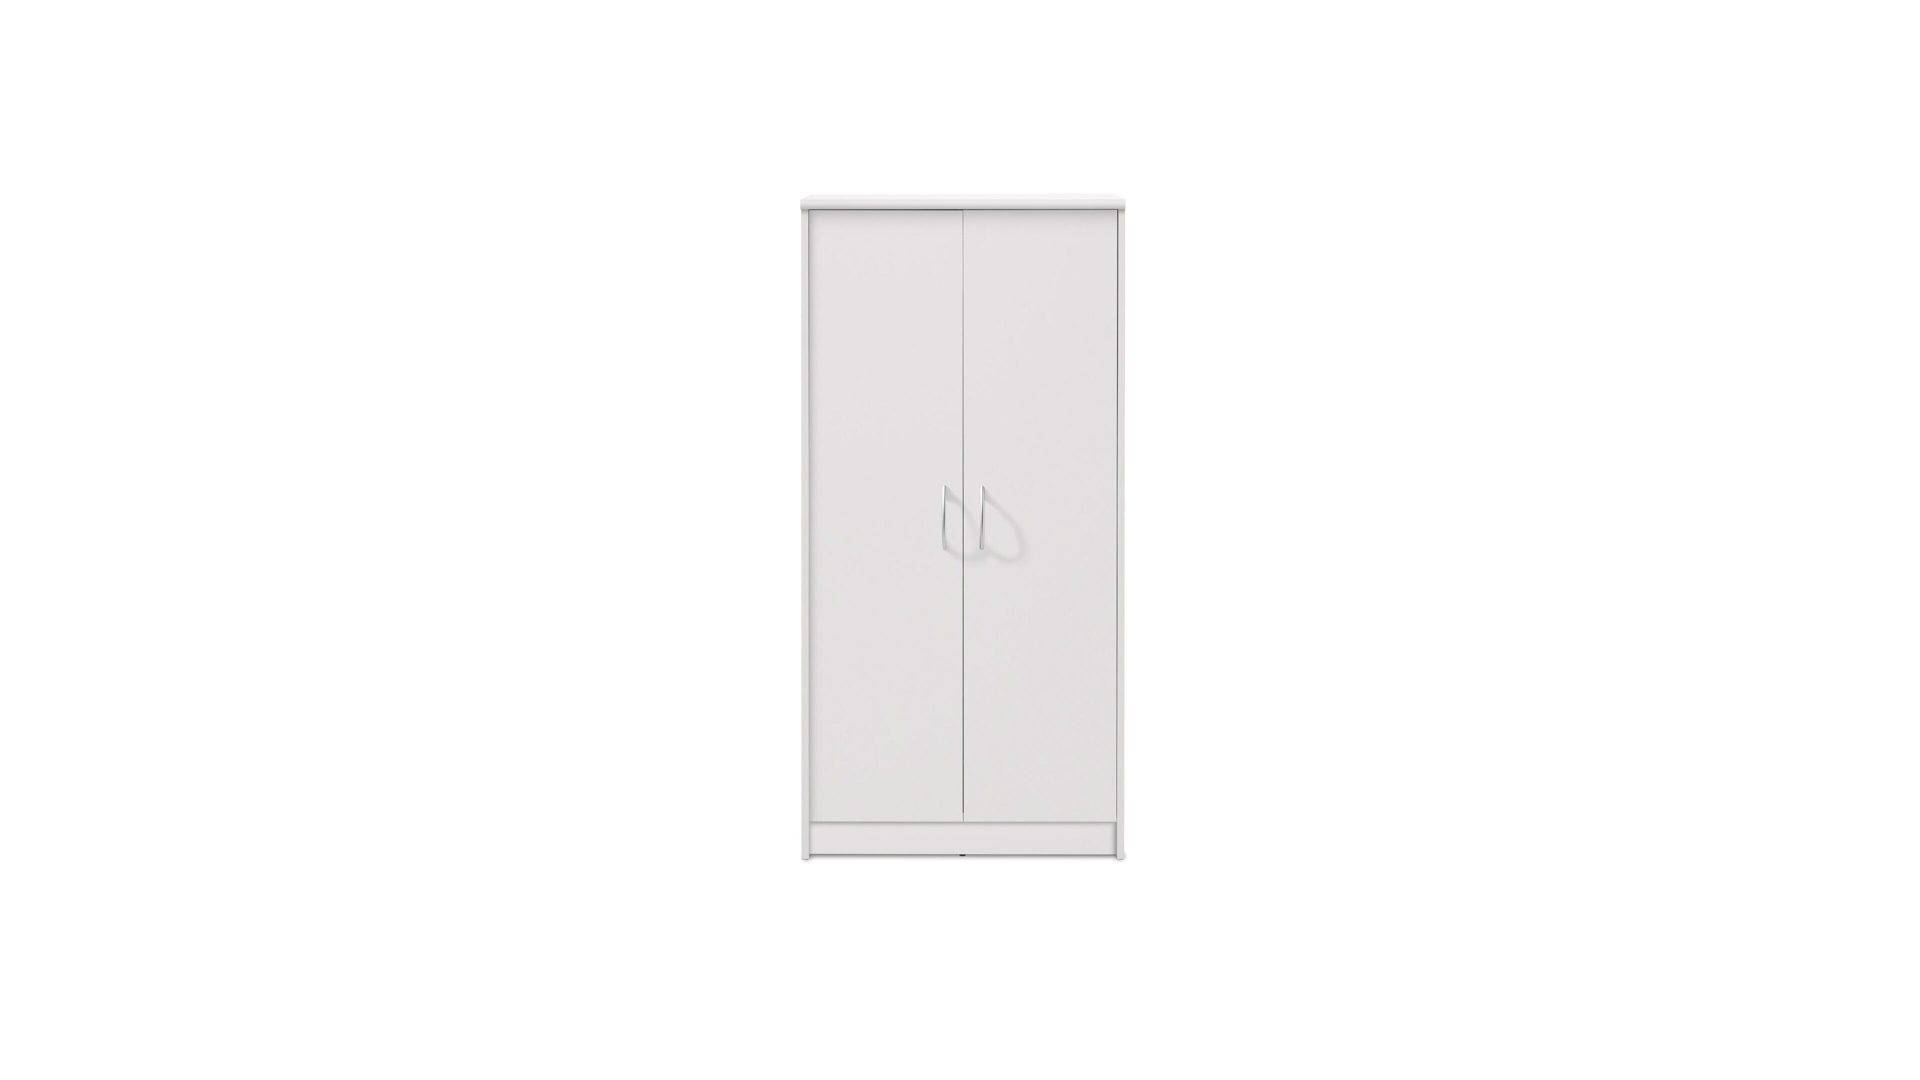 Aktenschrank Bega consult aus Holz in Weiß Aktenschrank weiße Kunststoffoberflächen – zwei Türen, Höhe ca. 148 cm